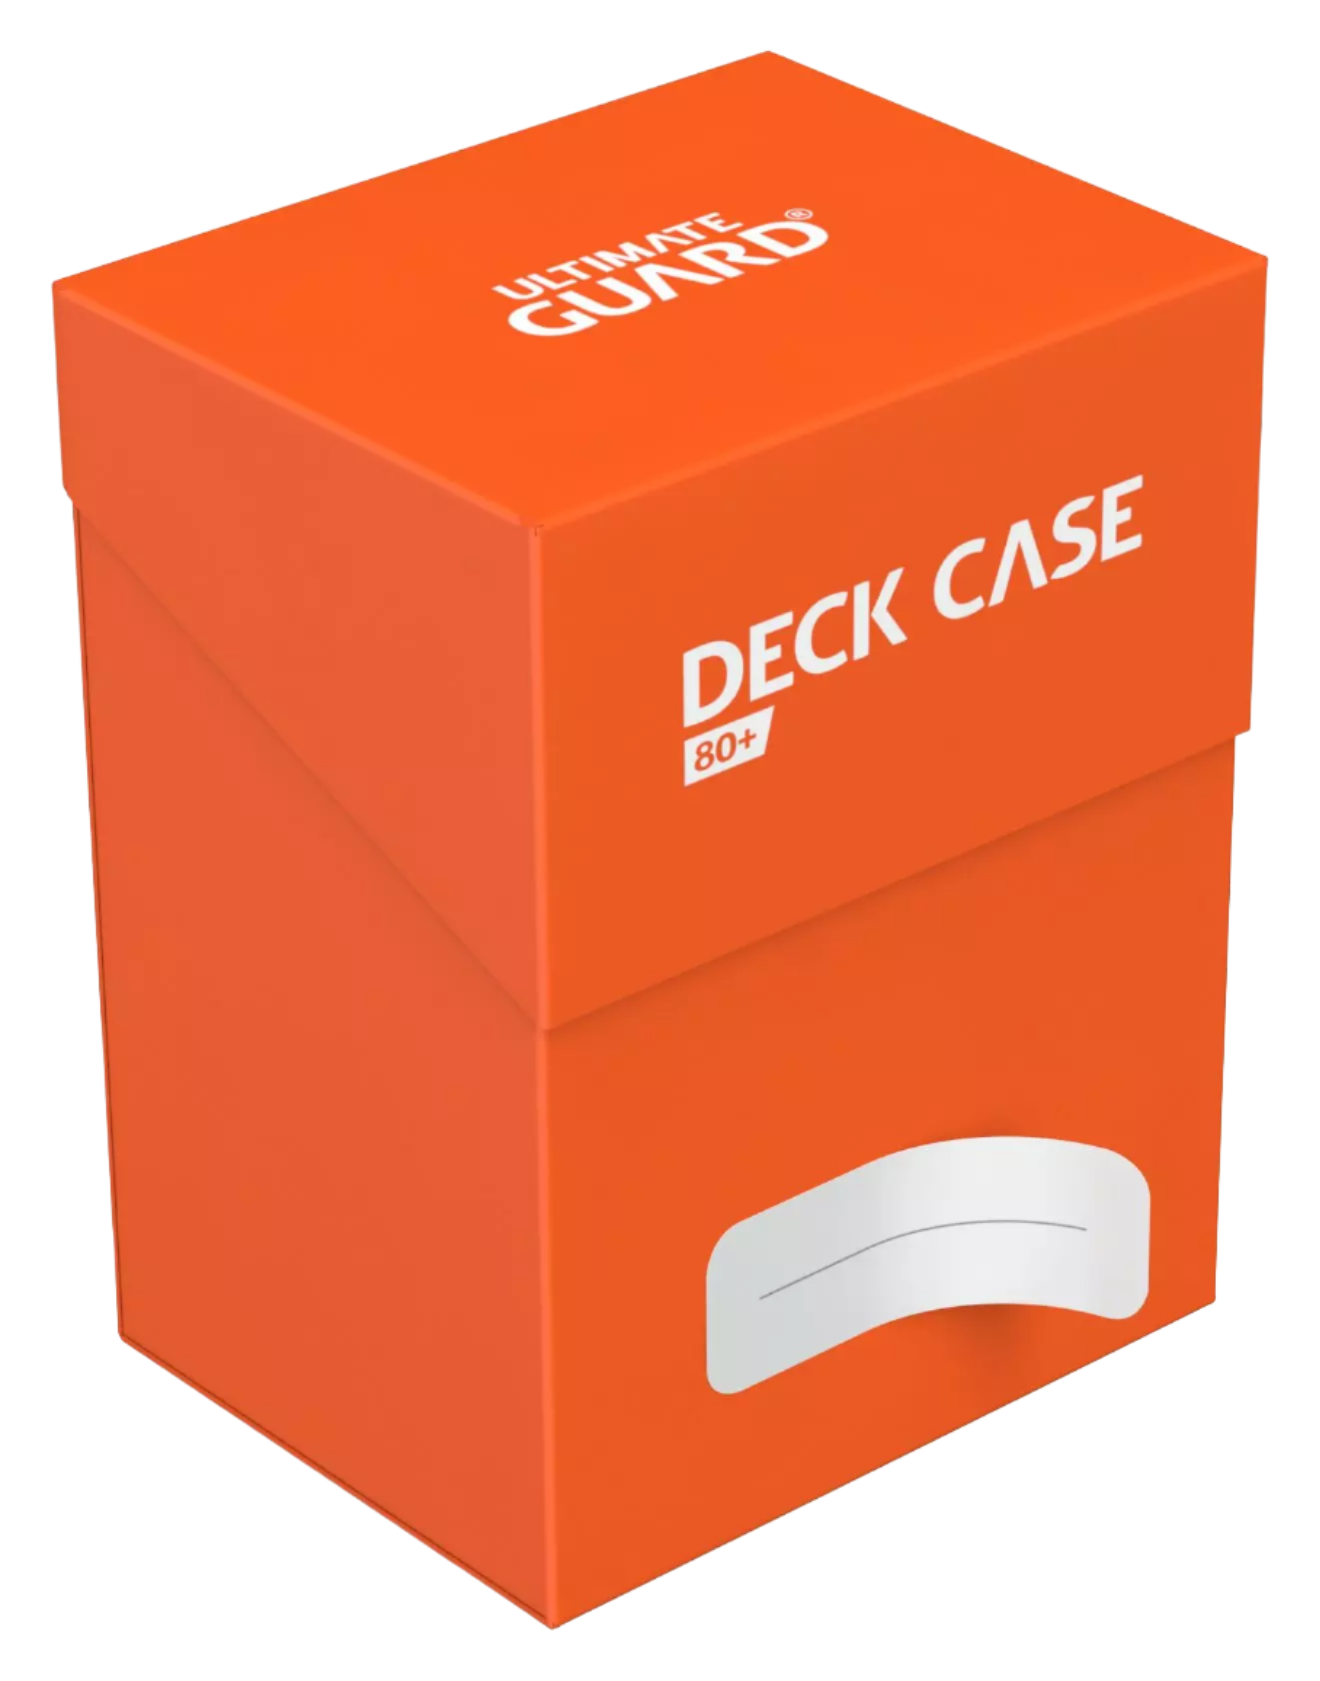 Ultimate Guard - 80+ Deck Case - Orange